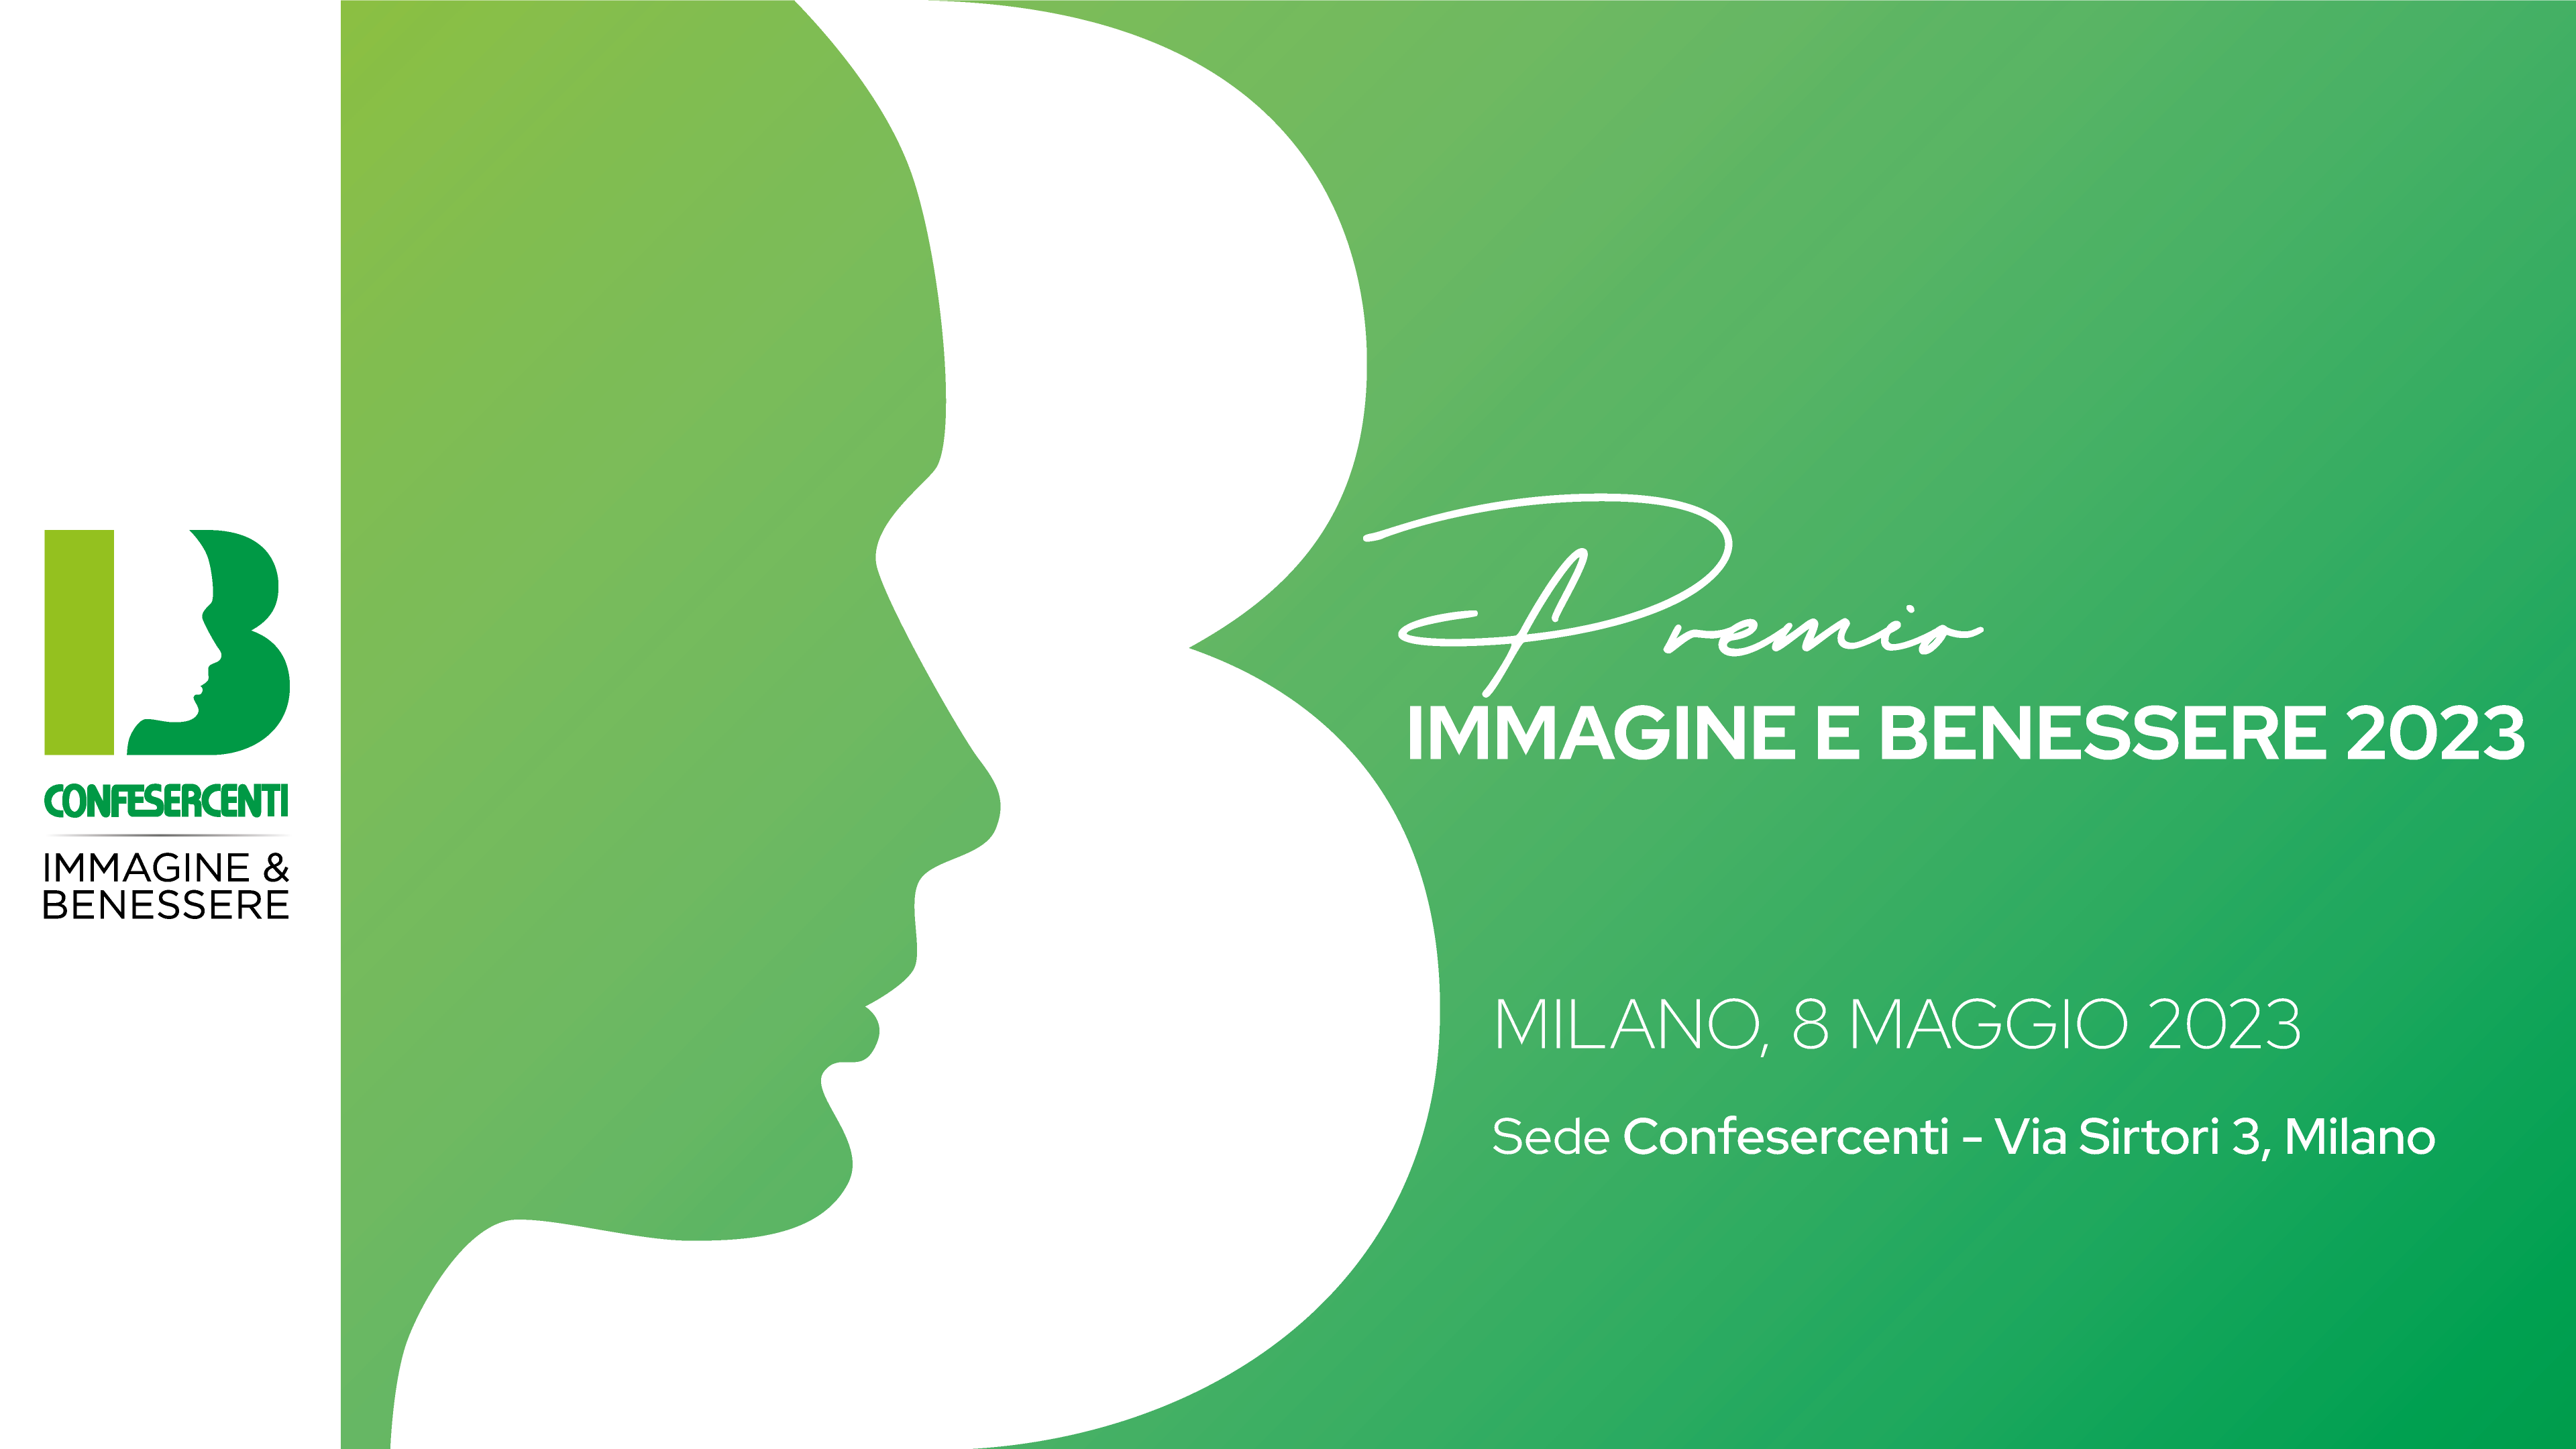 Immagine e Benessere a convegno, l’8 maggio a Milano